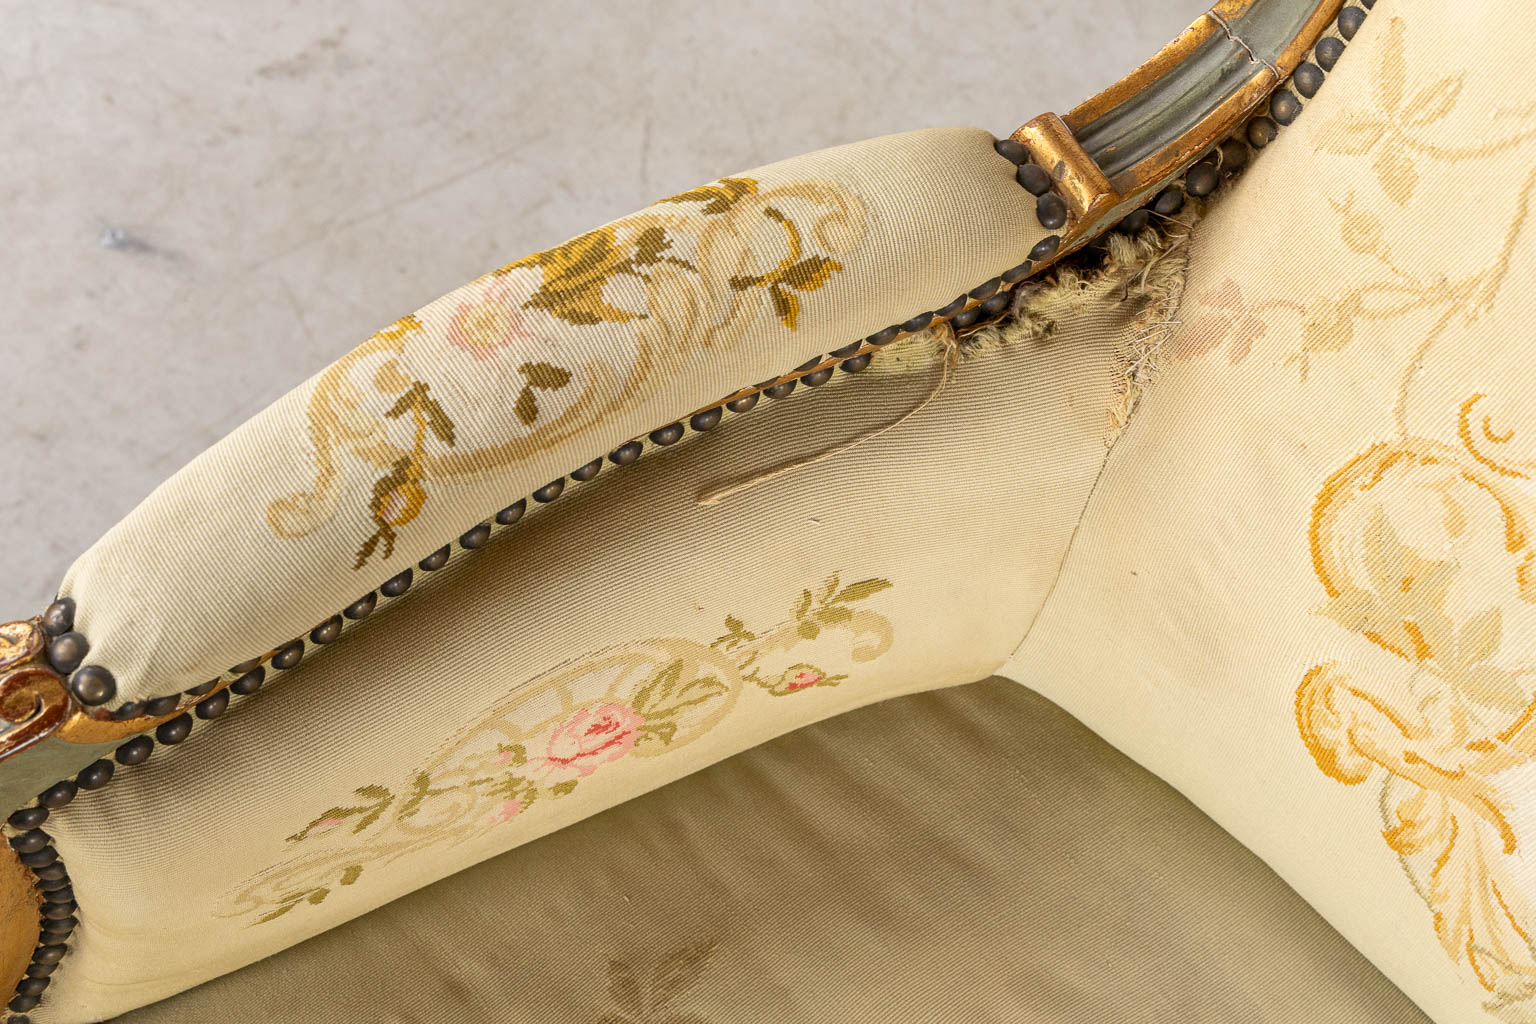 Een Lodewijk XV stijl zetel, overtrokken met bloemen borduurwerken. (L:80 x W:175 x H:96 cm)